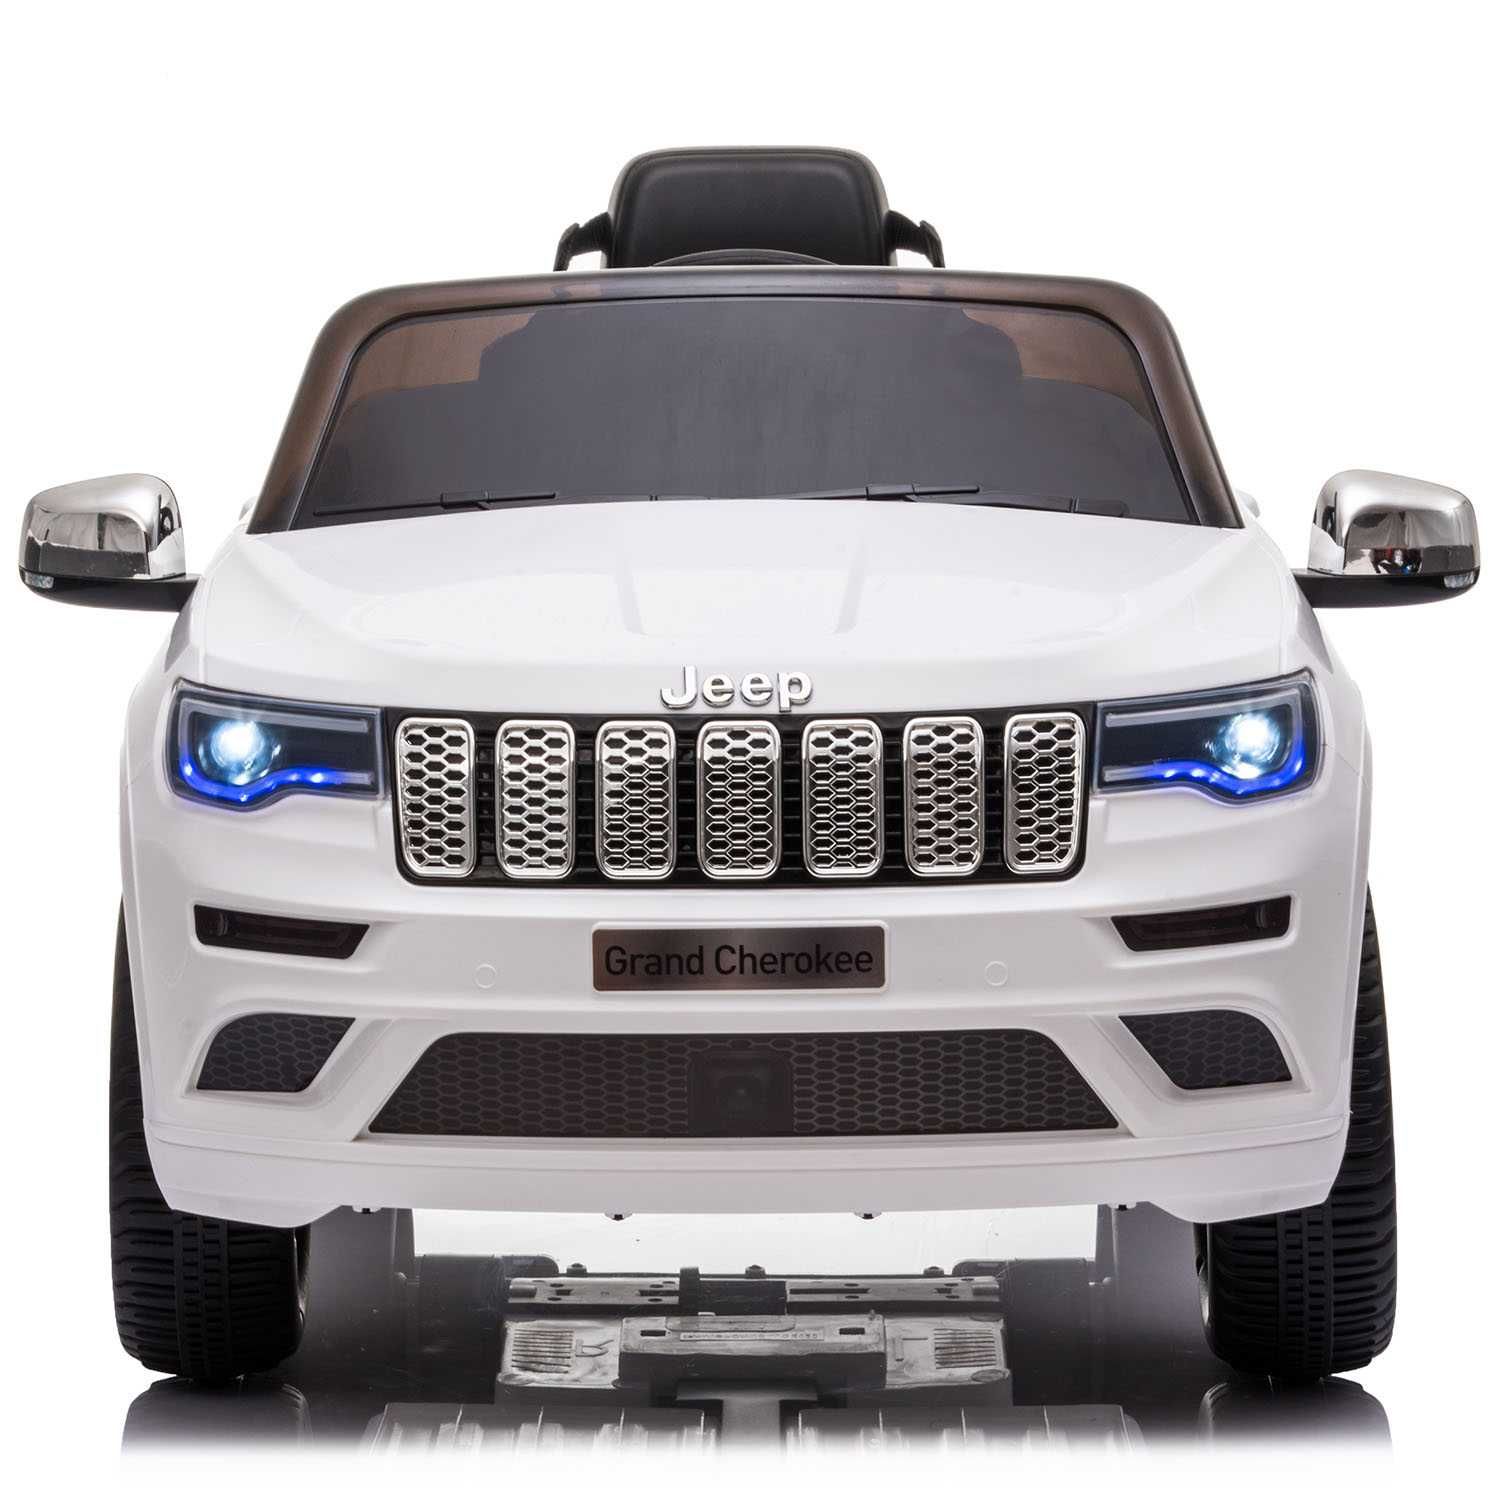 Mașinuță electrică pentru copii Jeep Grand Cherokee alb